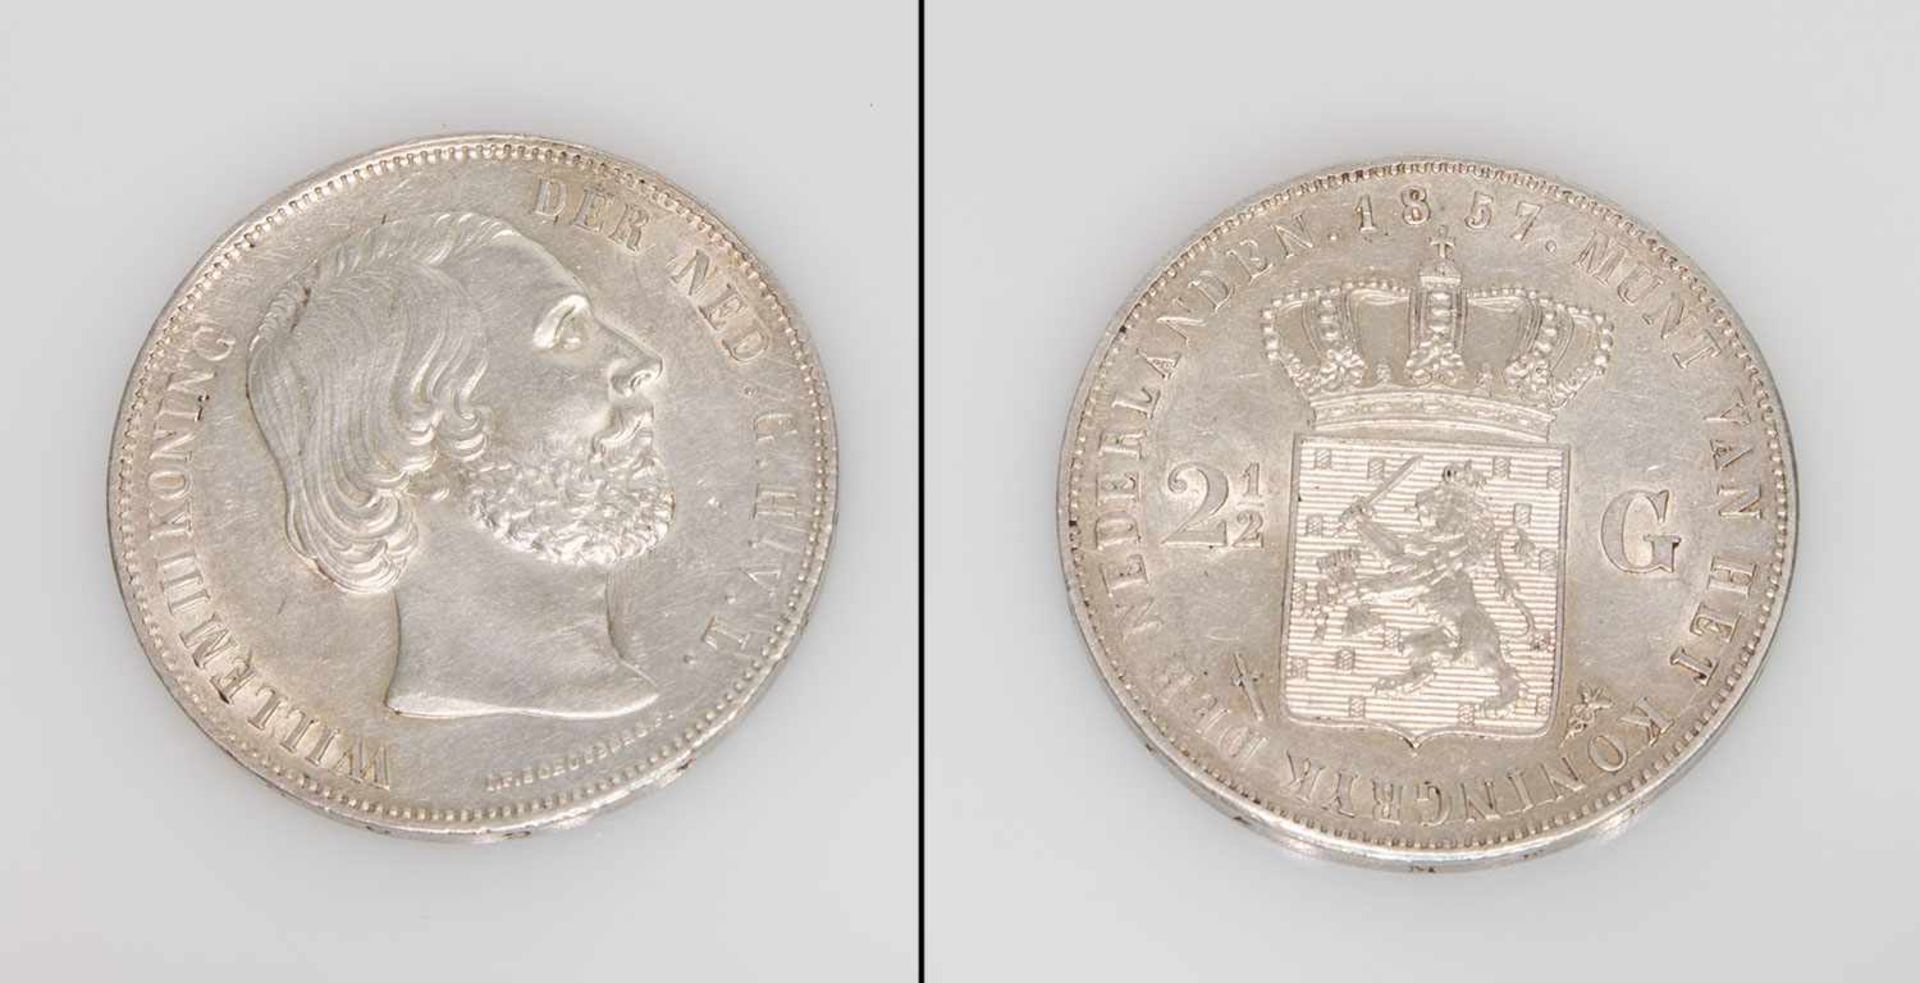 21/2 GuldenNiederlande 1857, Wilhelm III., Silber, vzgl.-stgl.